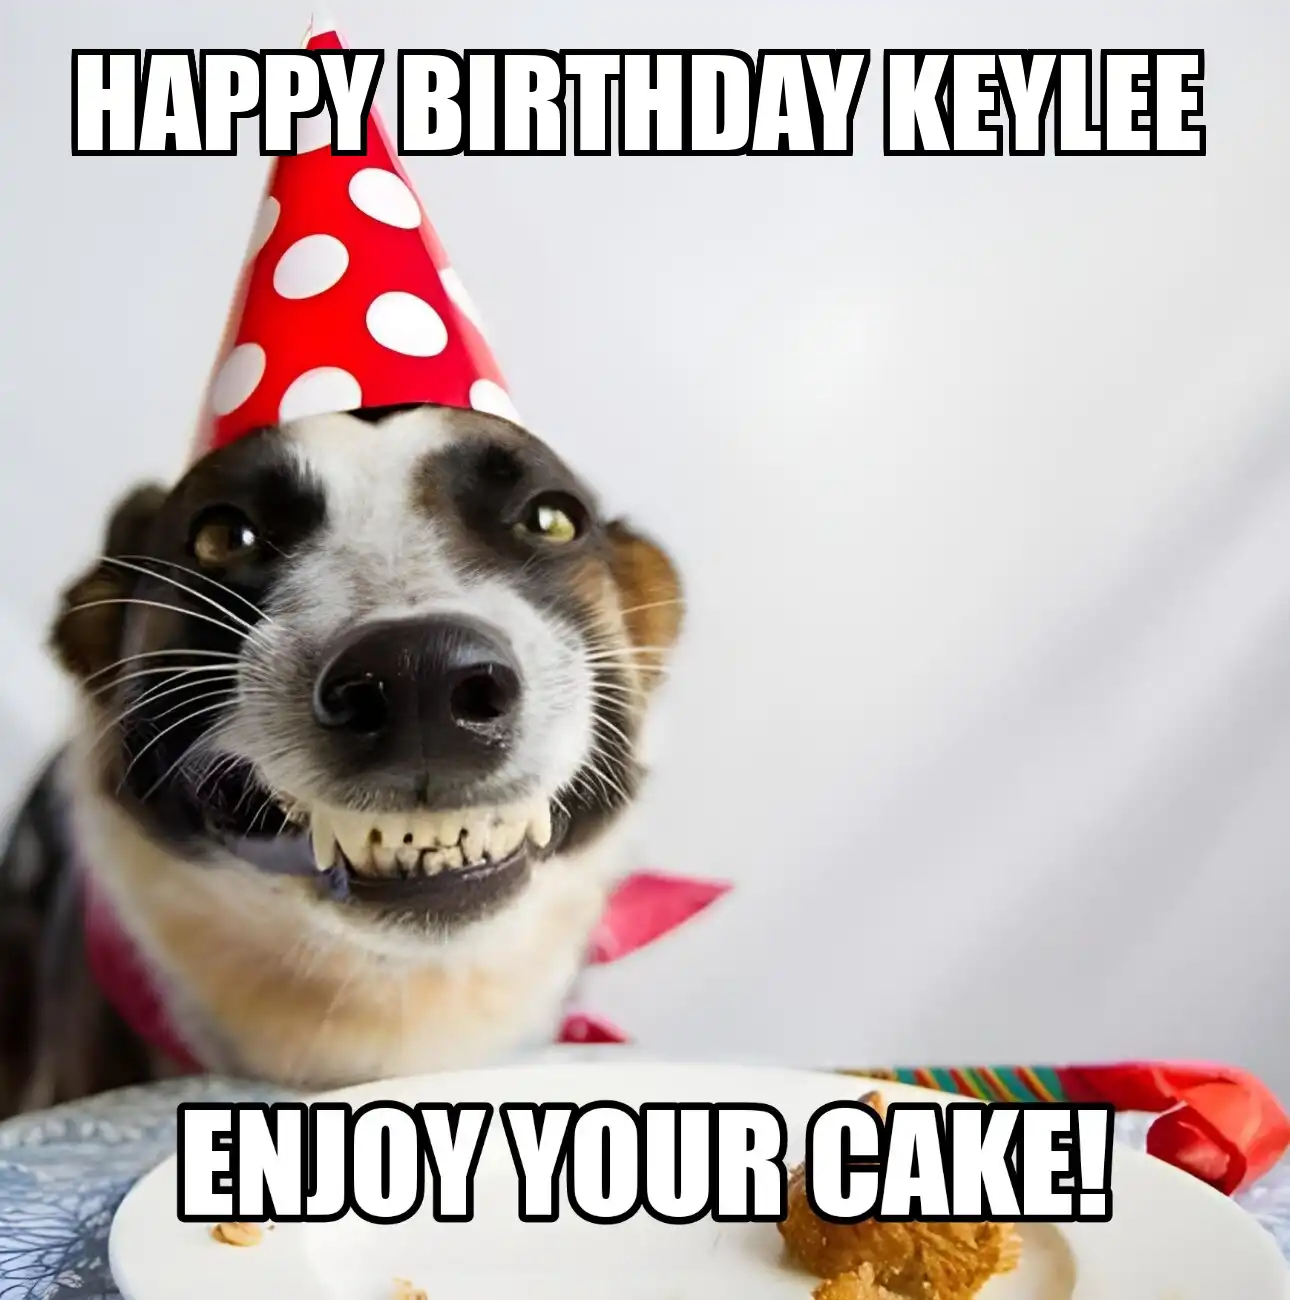 Happy Birthday Keylee Enjoy Your Cake Dog Meme